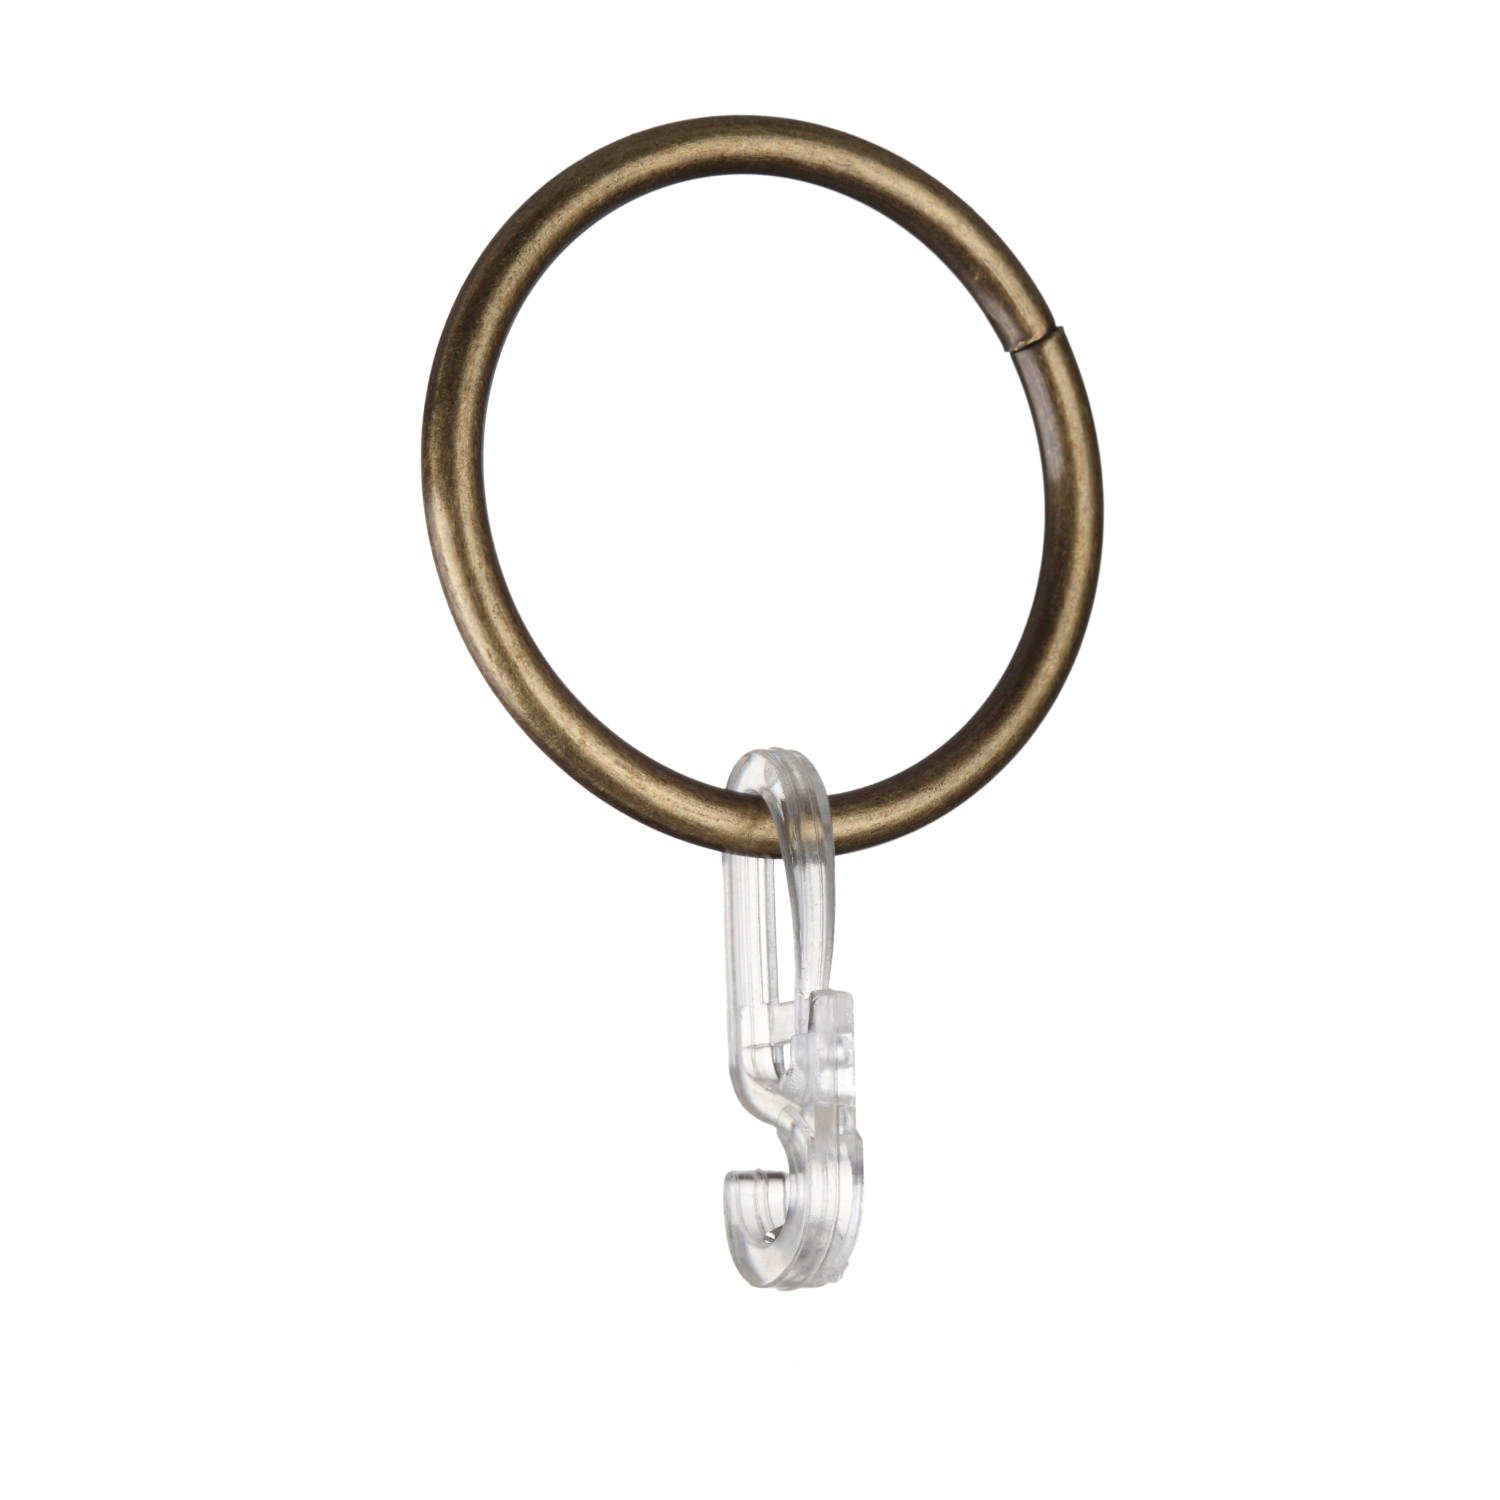 Karnizo žiedai su kabliukais CLASSIC, šviesaus sendinto aukso sp., Ø 25 mm, 10 vnt.